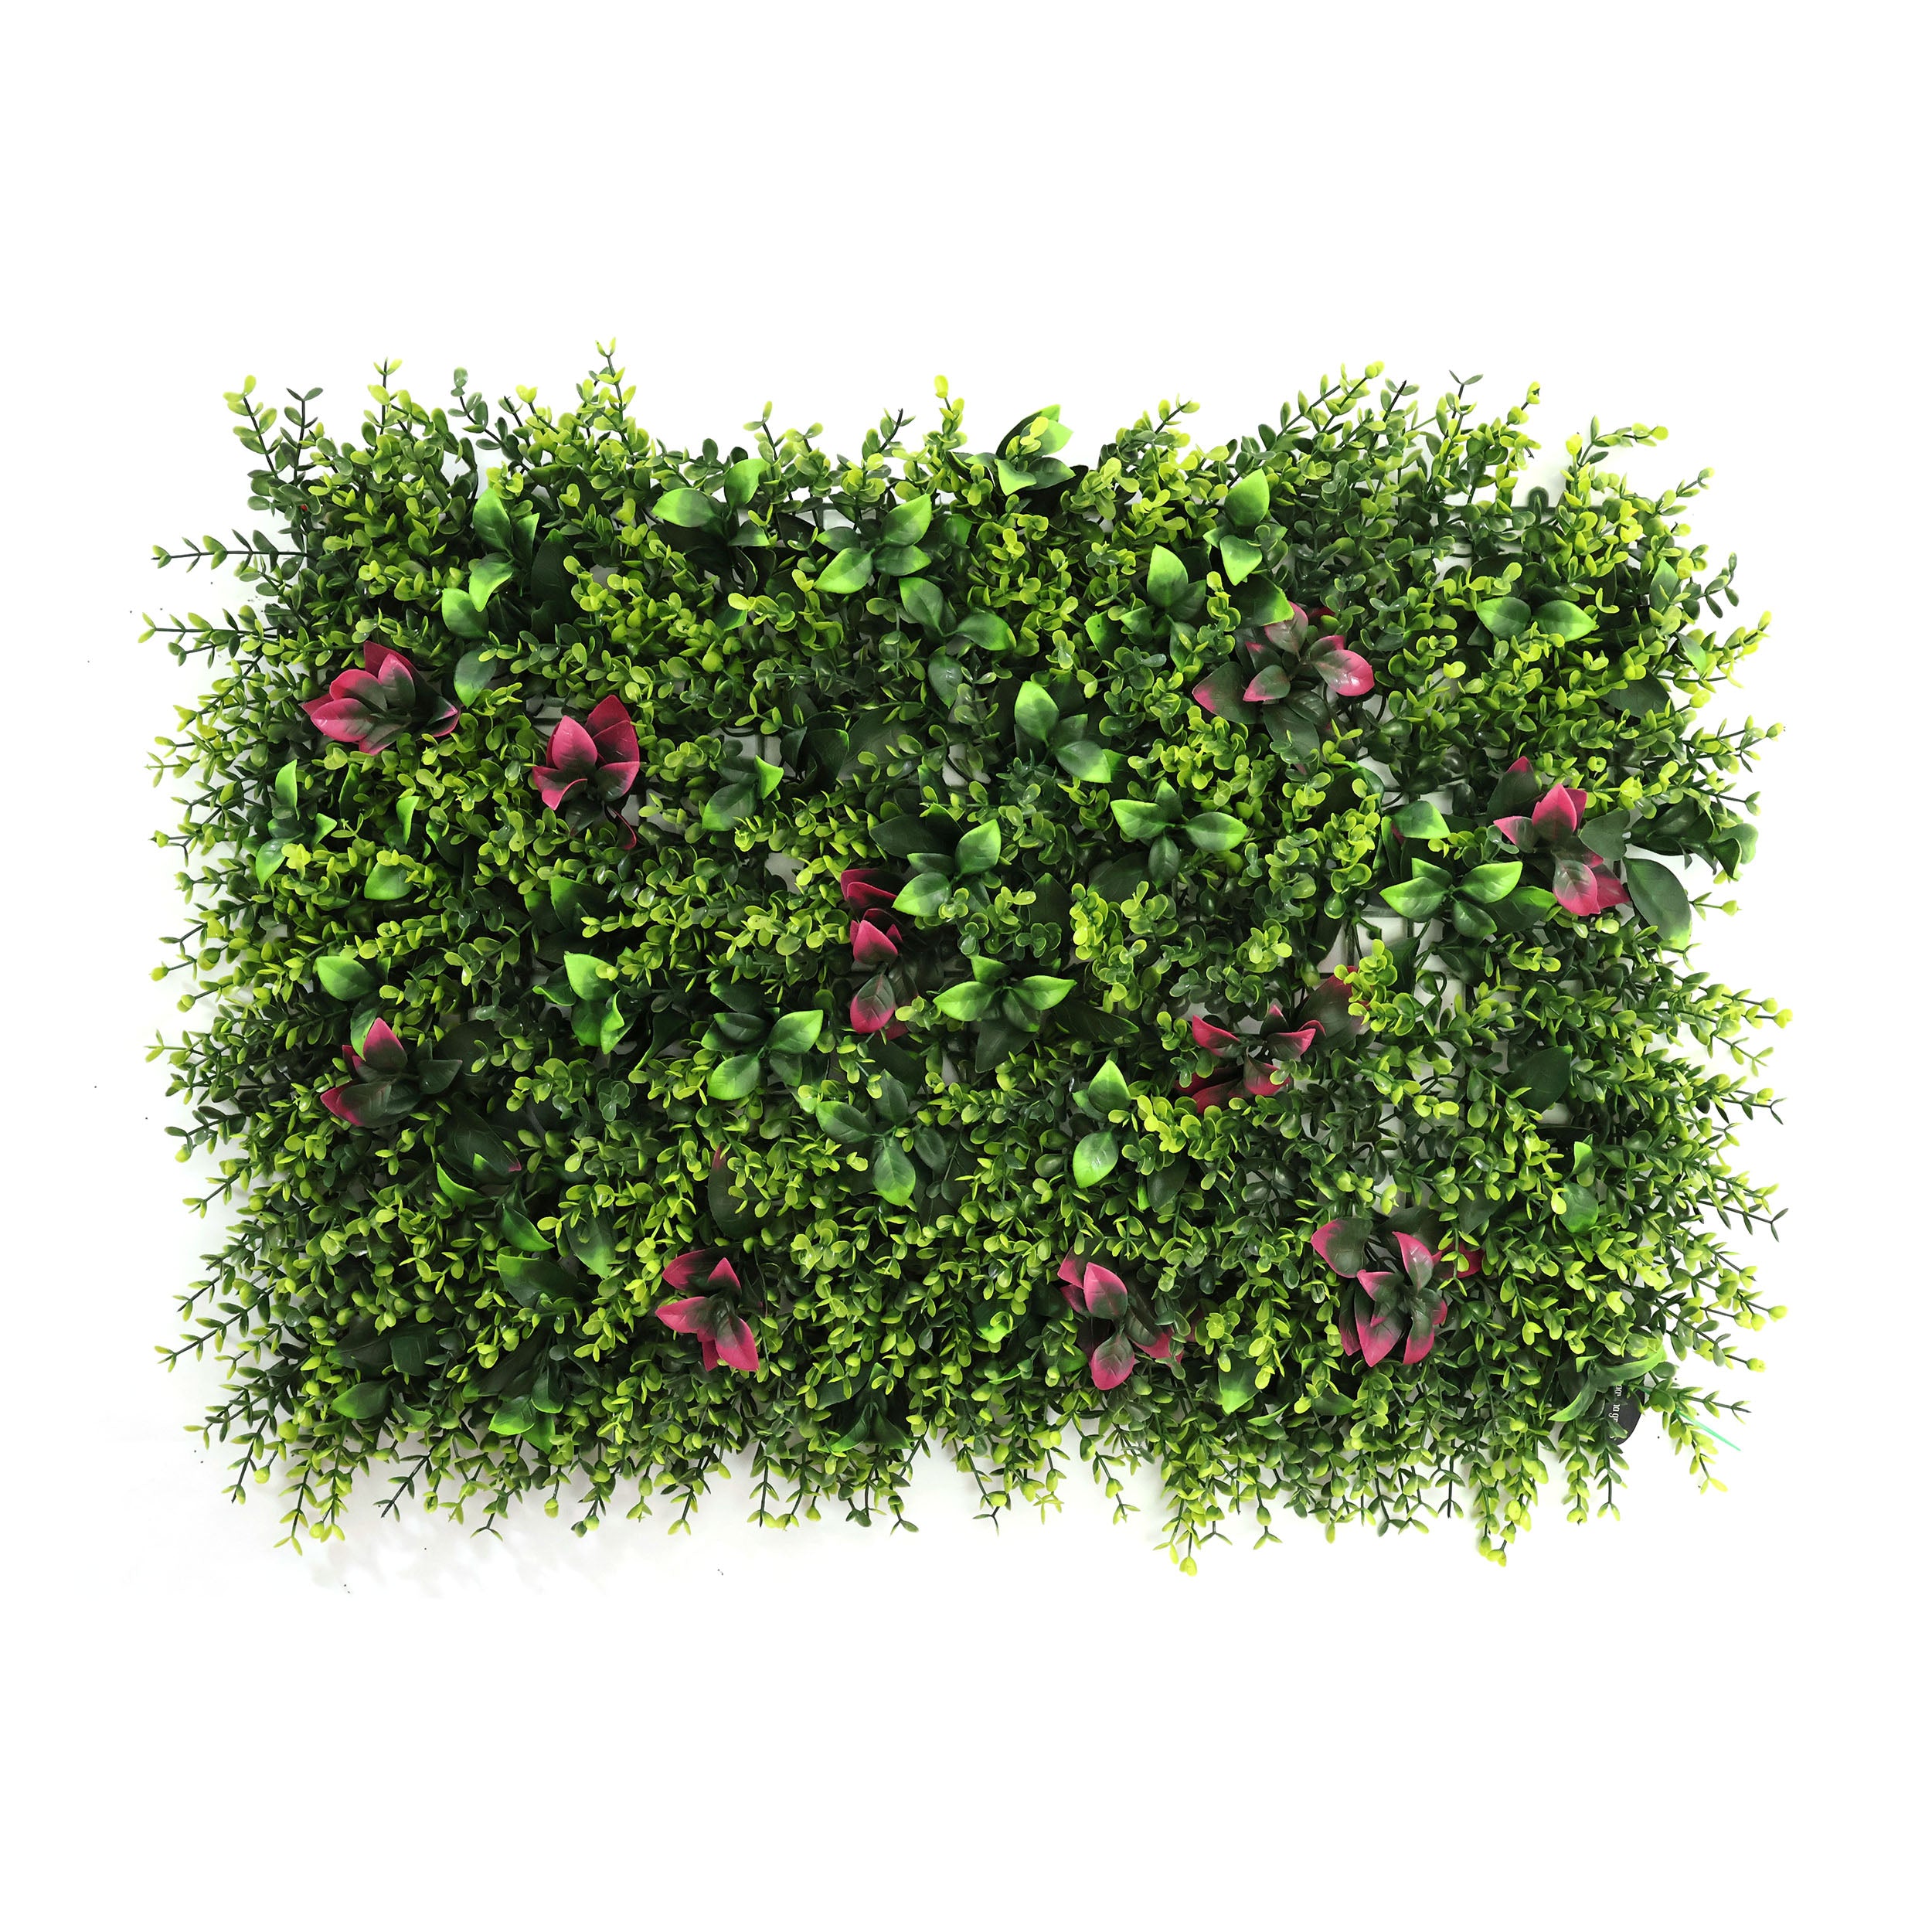 Aavana Greens Artificial Vertical Garden Wall Panel 40X60 CM